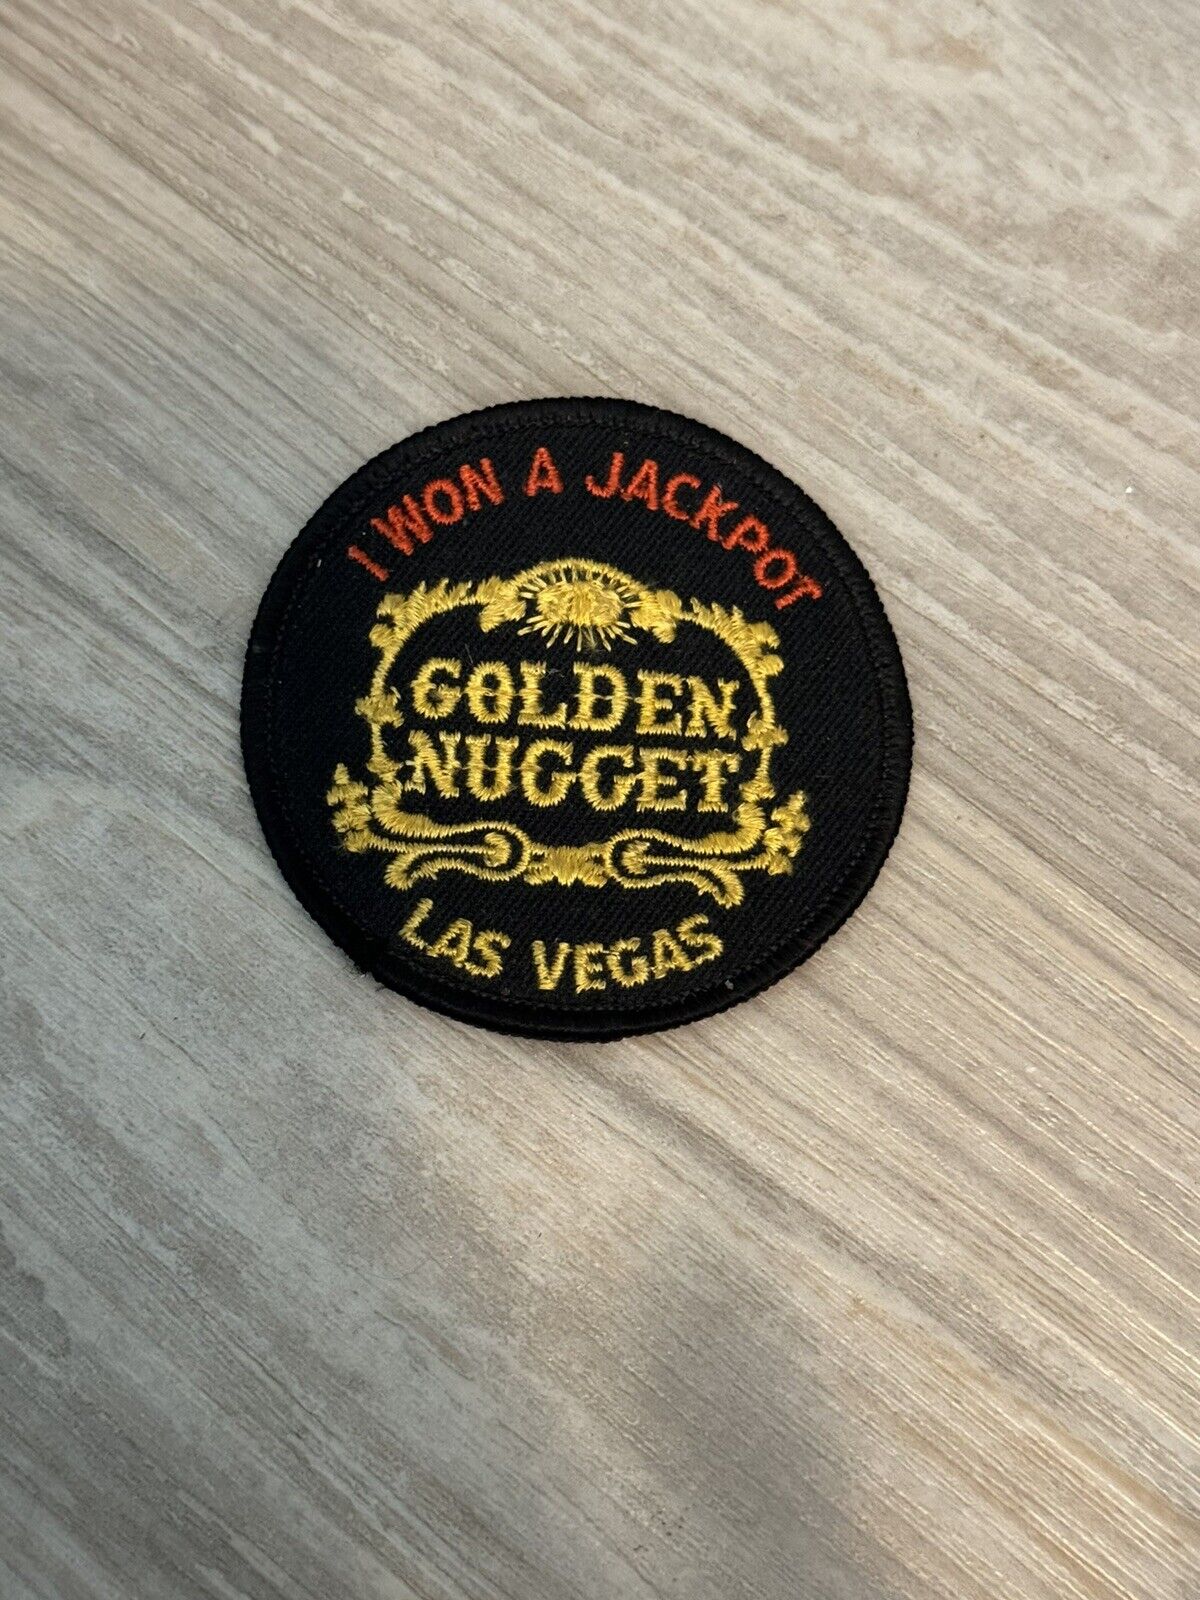 I Won a Jackpot Golden Nugget Las Vegas VINTAGE RARE Patch